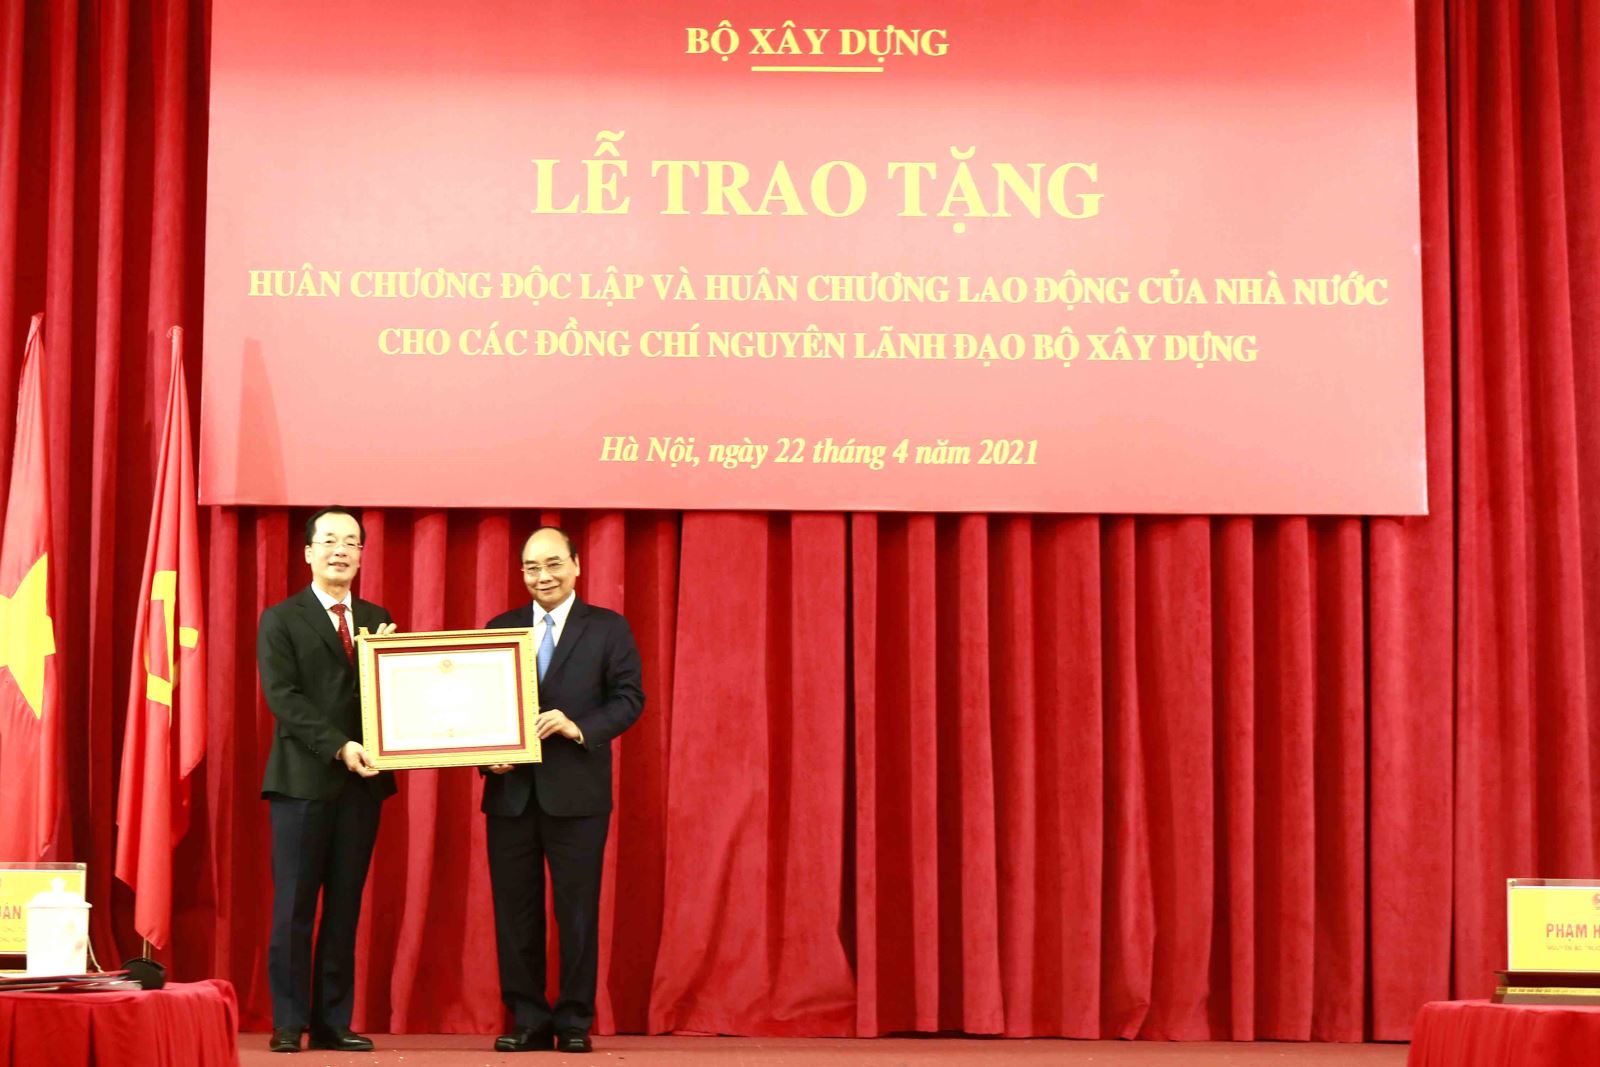 Chủ tịch nước Nguyễn Xuân Phúc trao Huân chương Độc lập hạng Nhì cho đồng chí Phạm Hồng Hà, nguyên Bộ trưởng Bộ Xây dựng